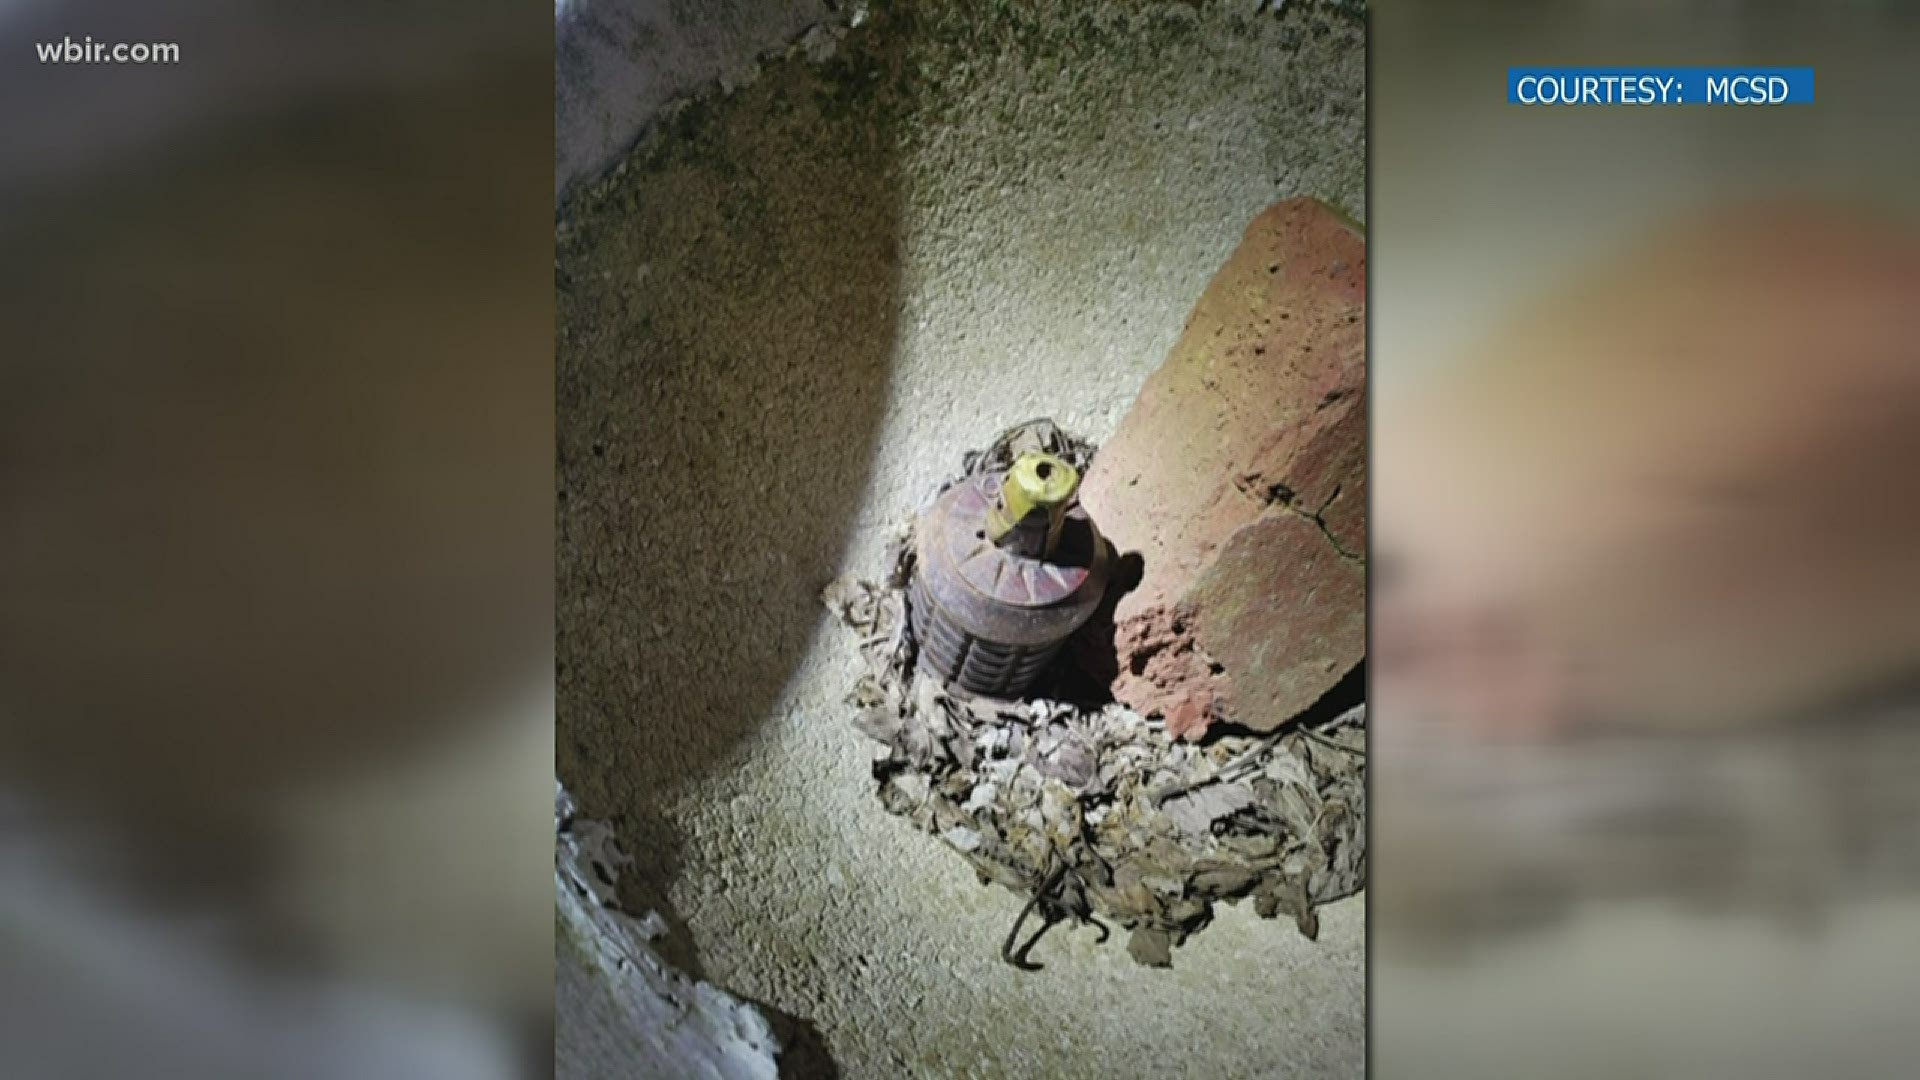 Deputies detonated a live World-War-II-era hand grenade found in an antique piece of pottery.